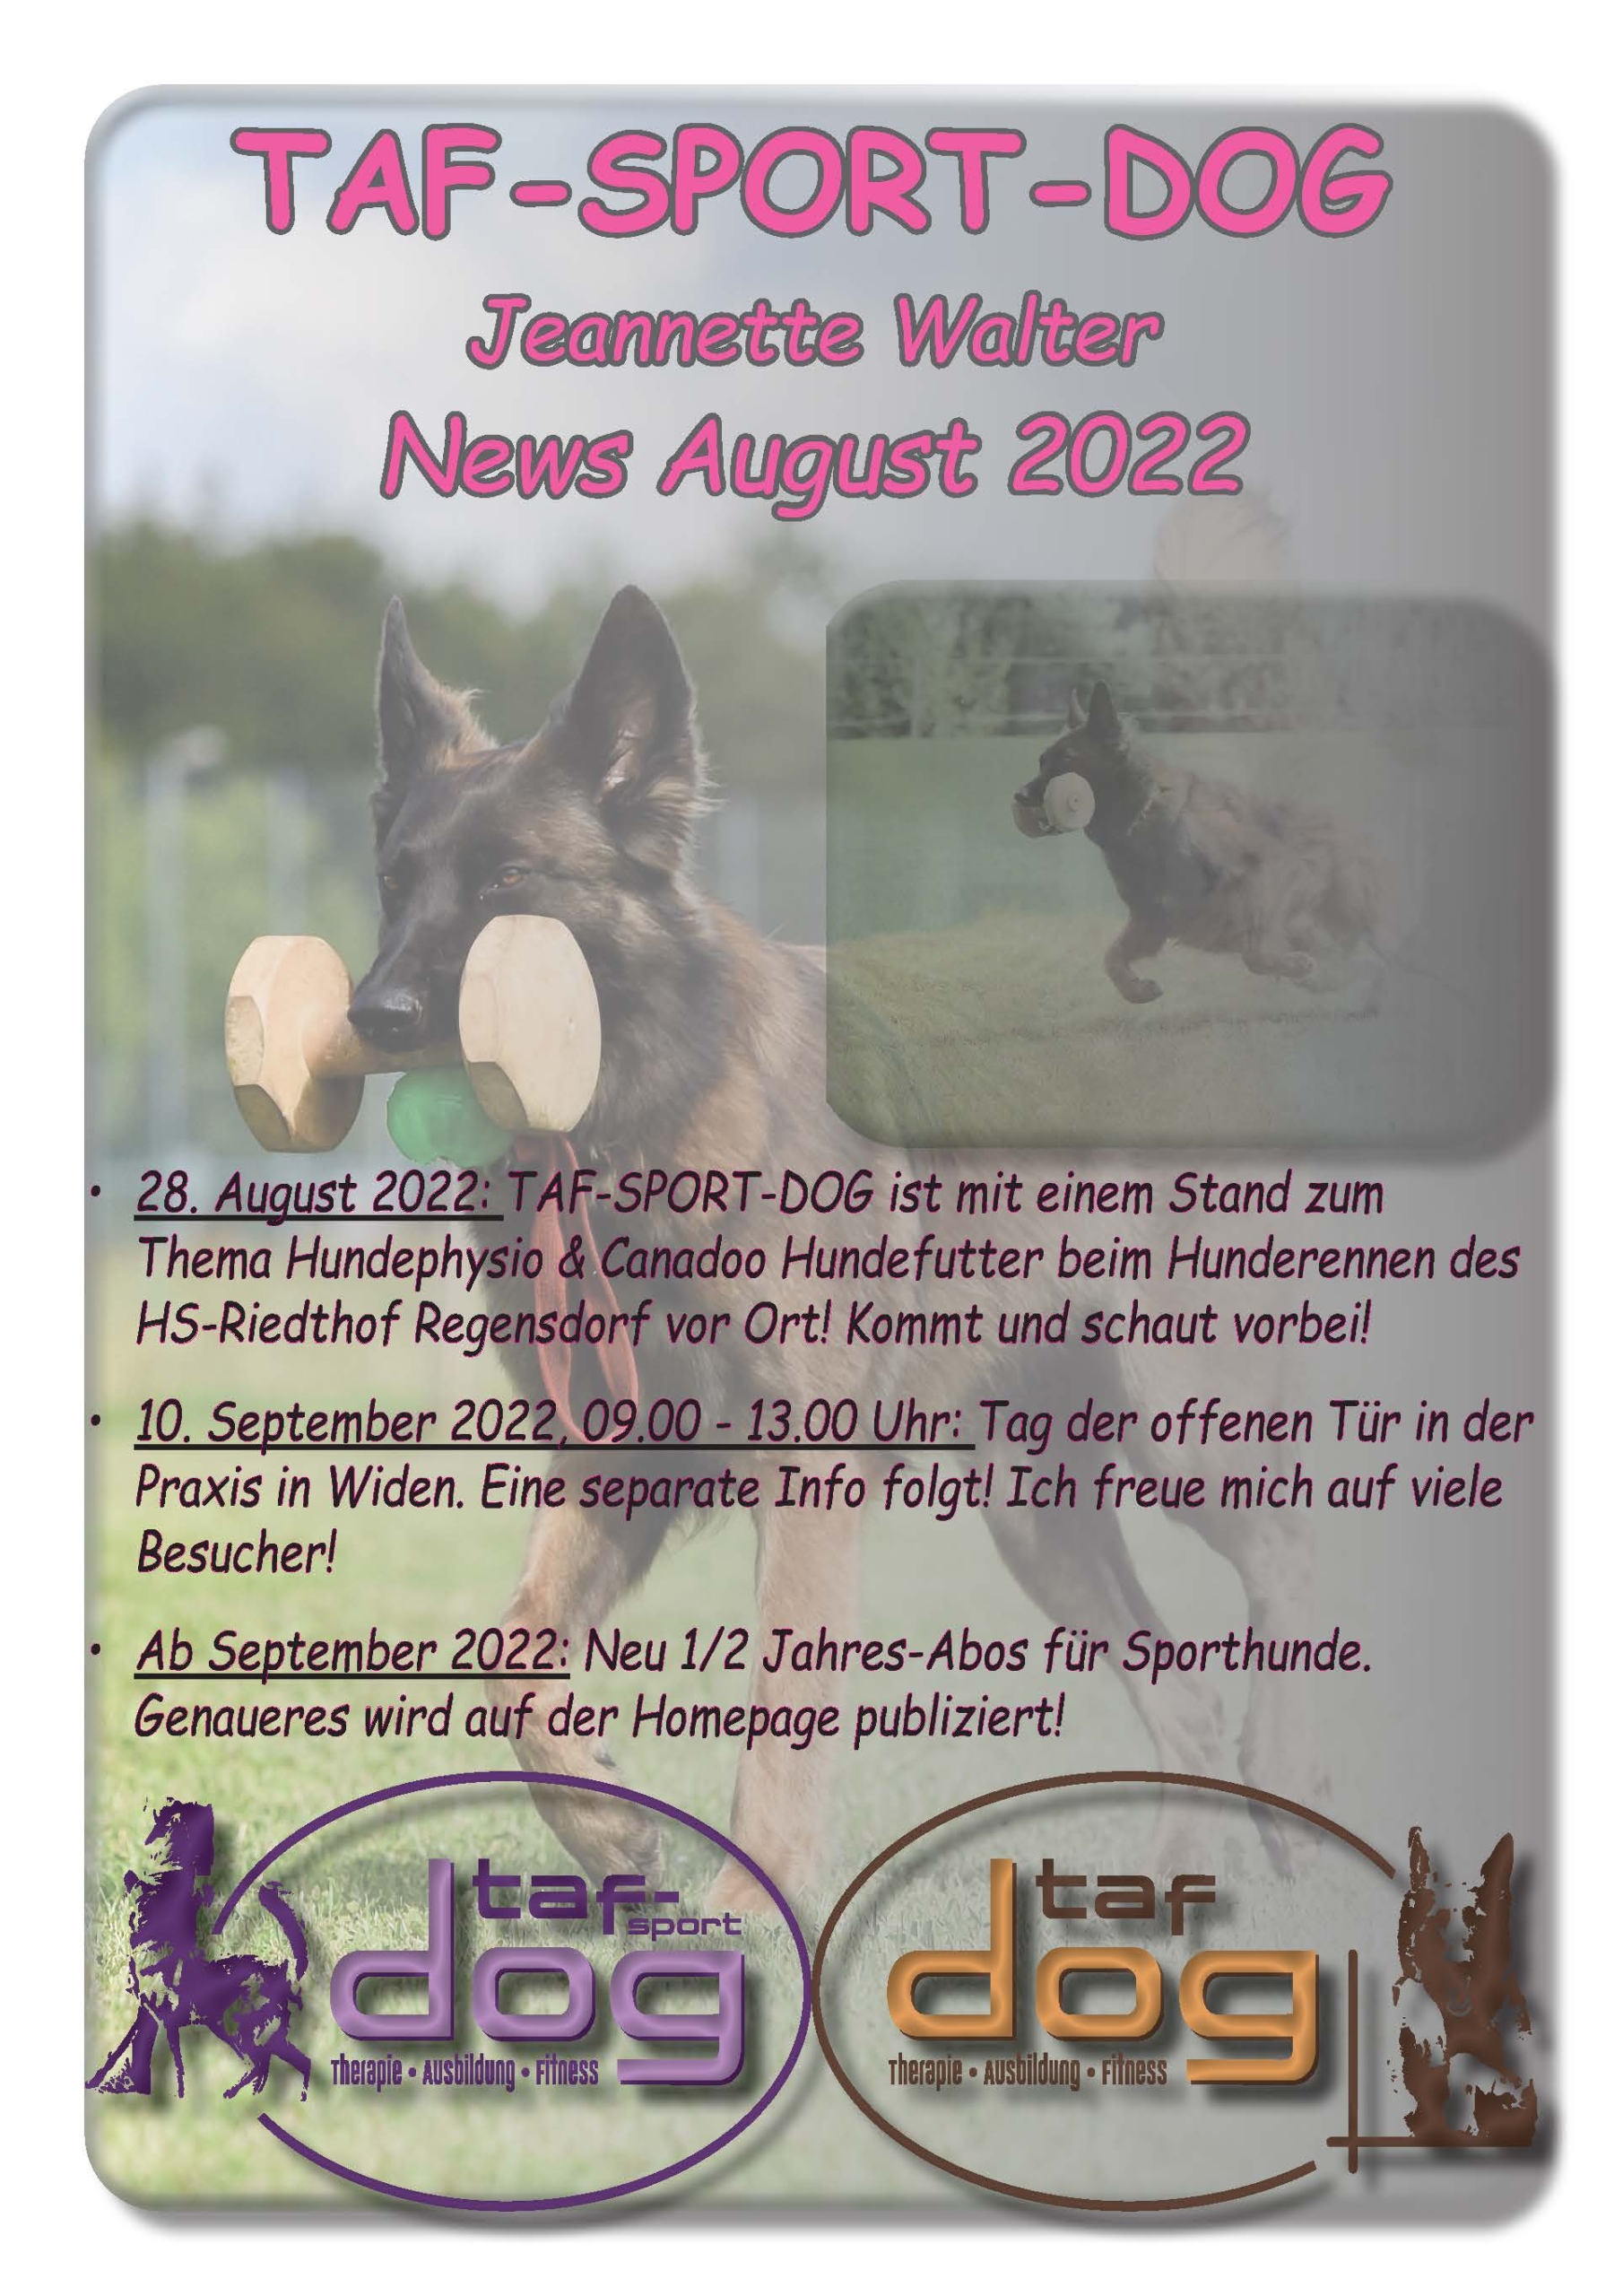 News August / September 2022